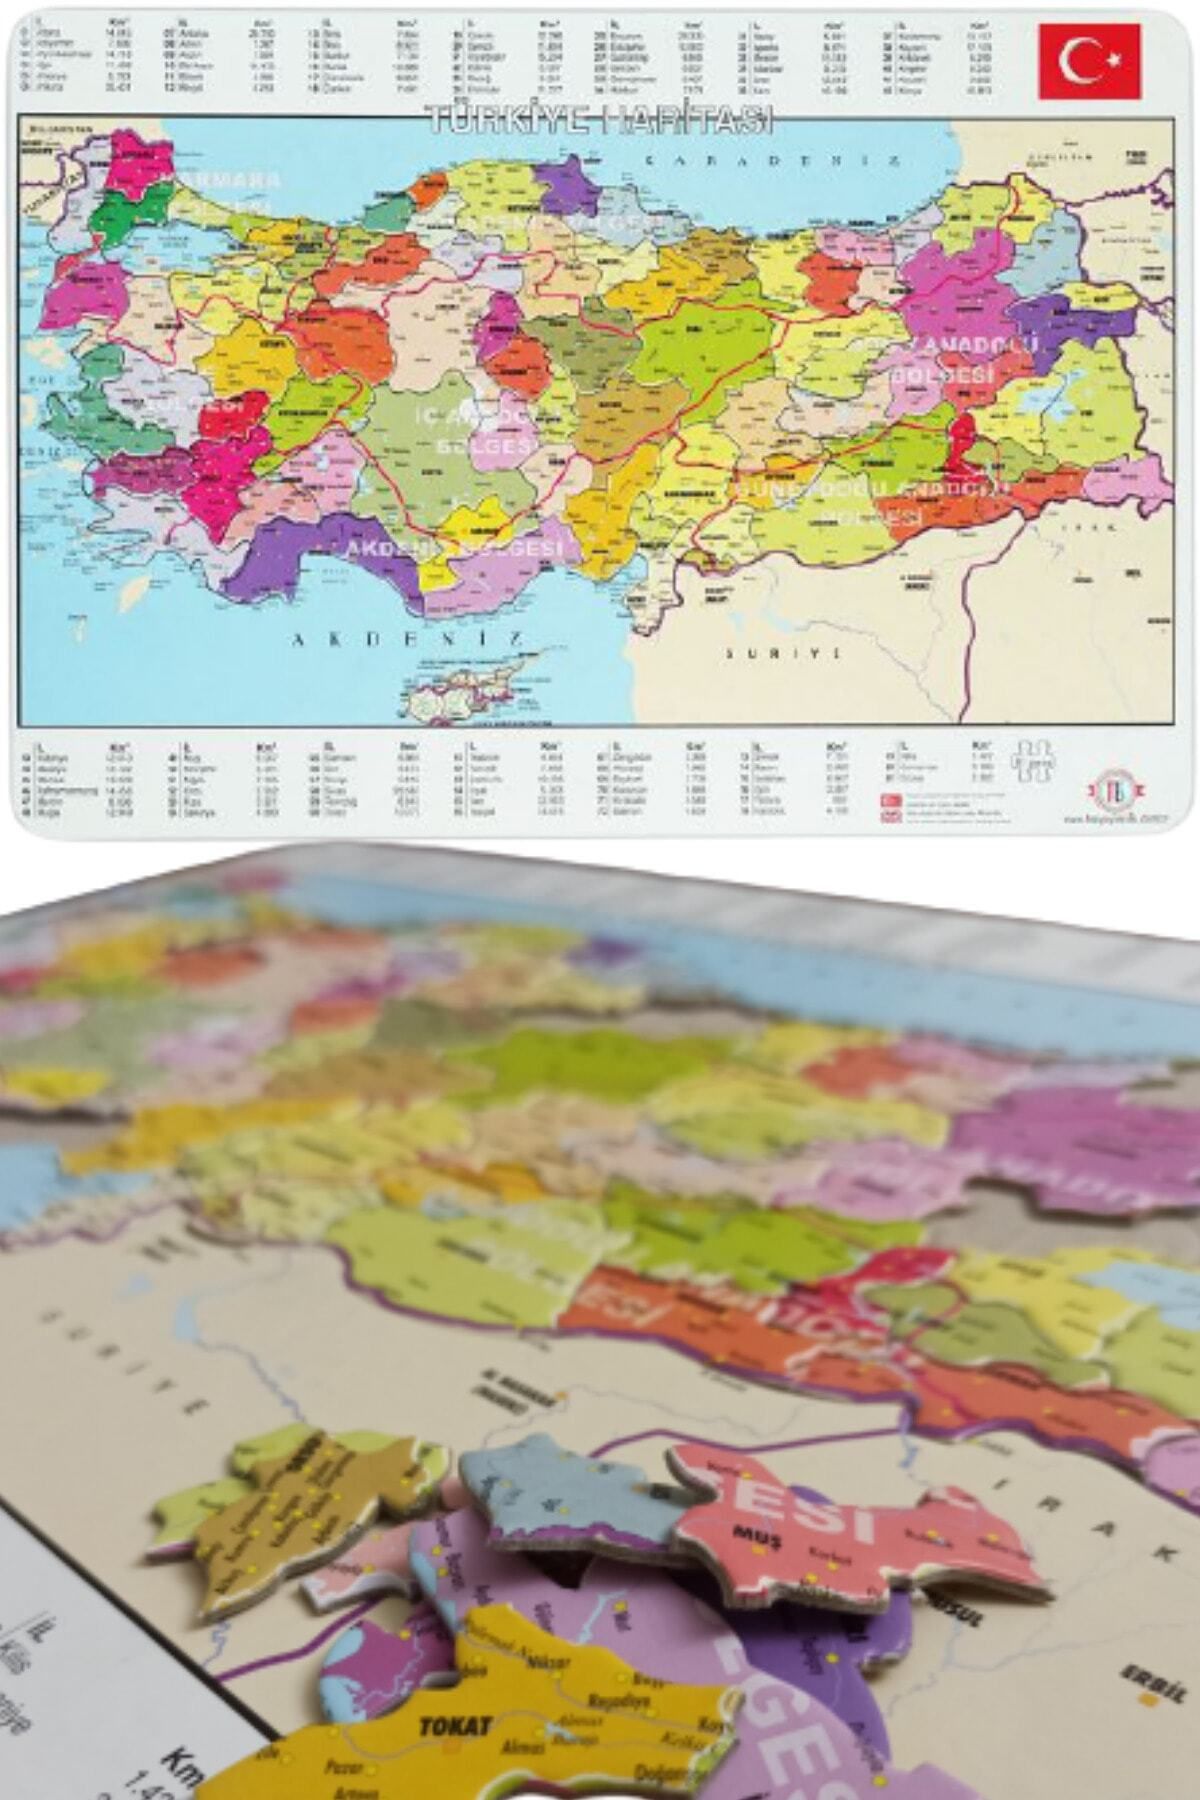 Tes Yayıncılık Türkiye Puzzle -81 Parça Türkiye Haritası Puzzle 28x40cm (YAPBOZ TÜRKİYE)